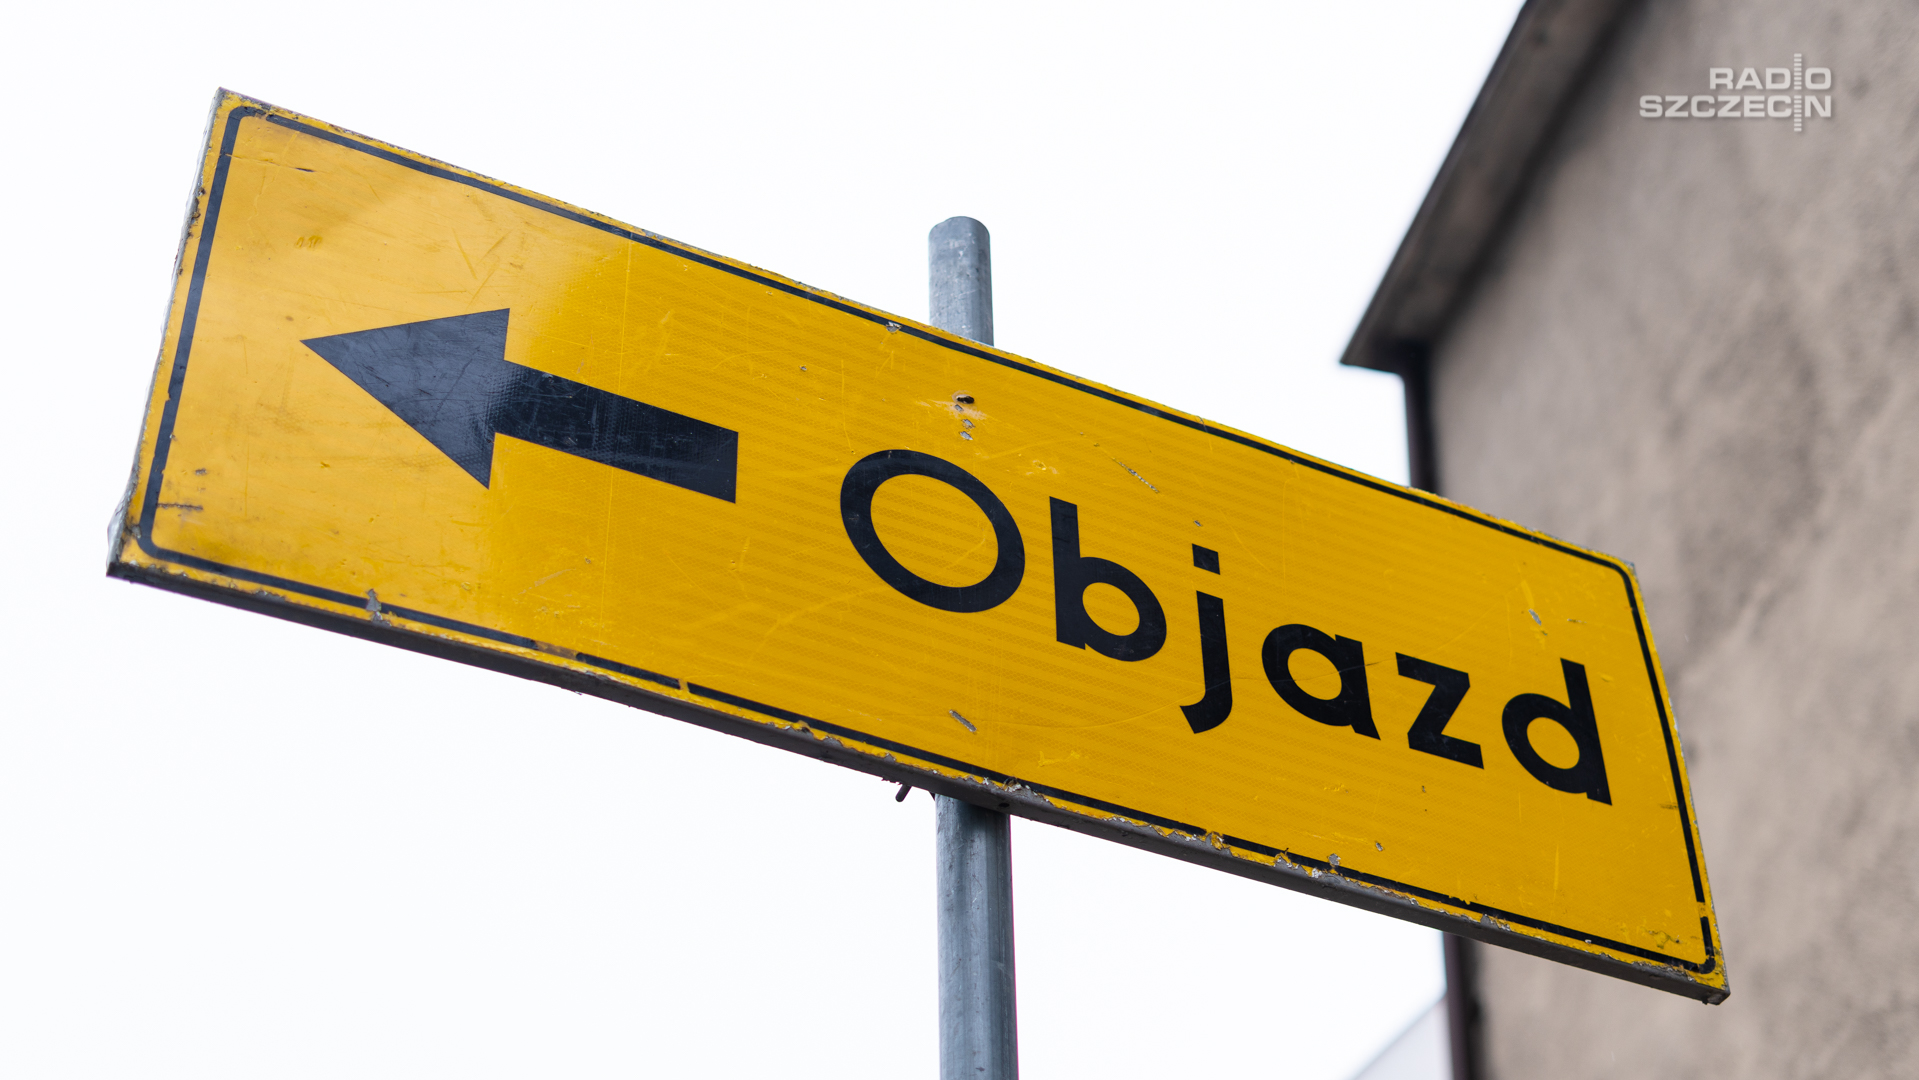 Ważna informacja dla kierowców pokonujących ulice Szczecina. Do godziny 20 zamknięte dla ruchu zostały ulice okalające Zachodniopomorski Urząd Wojewódzki.